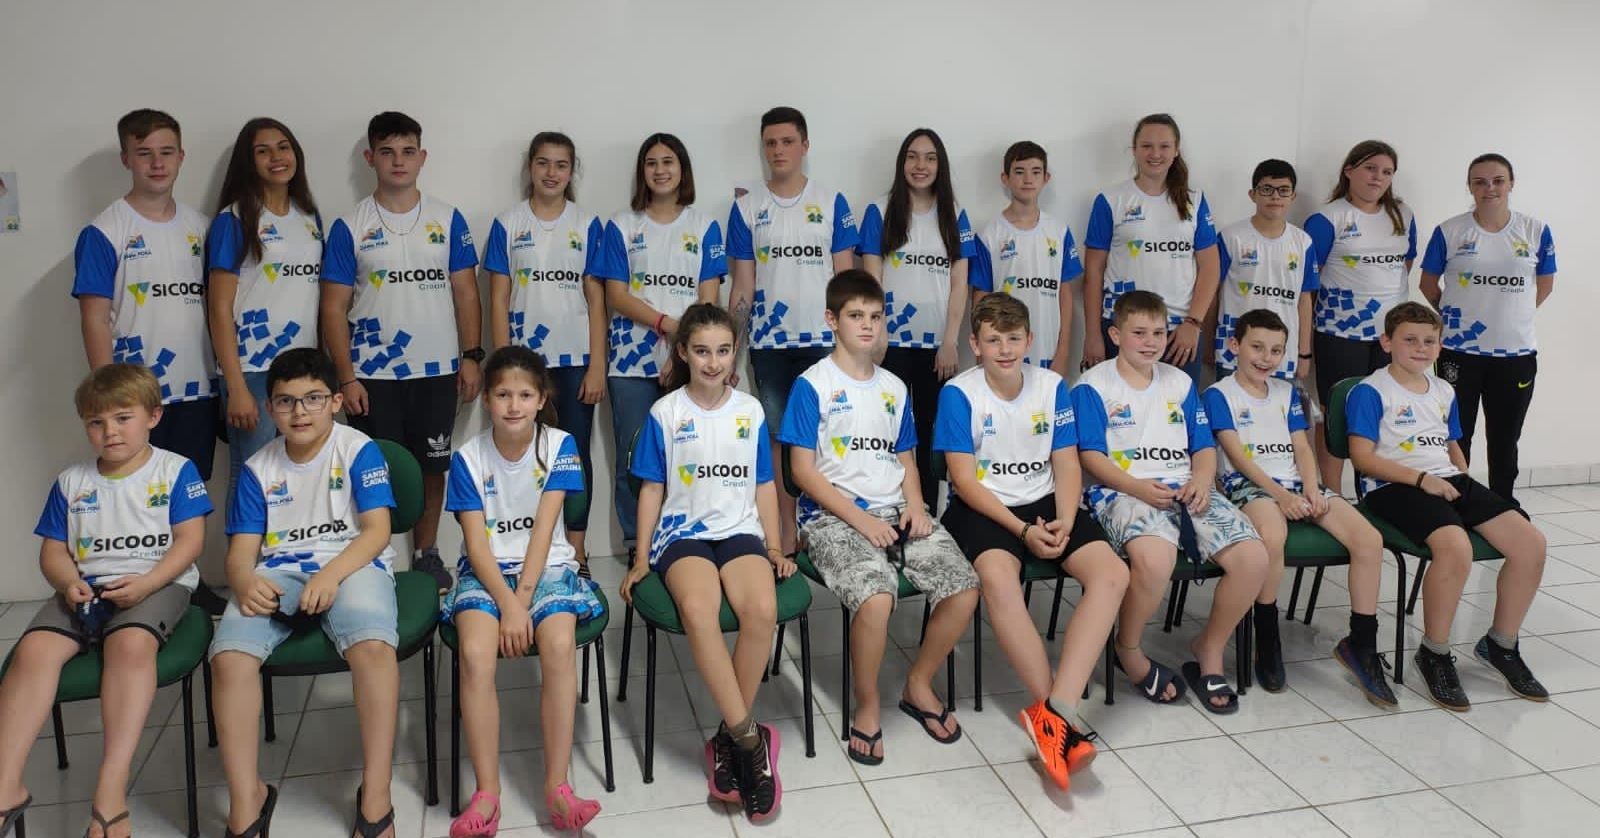 Jovens de Cunha Porã irão representar o município no Campeonato Brasileiro de Xadrez